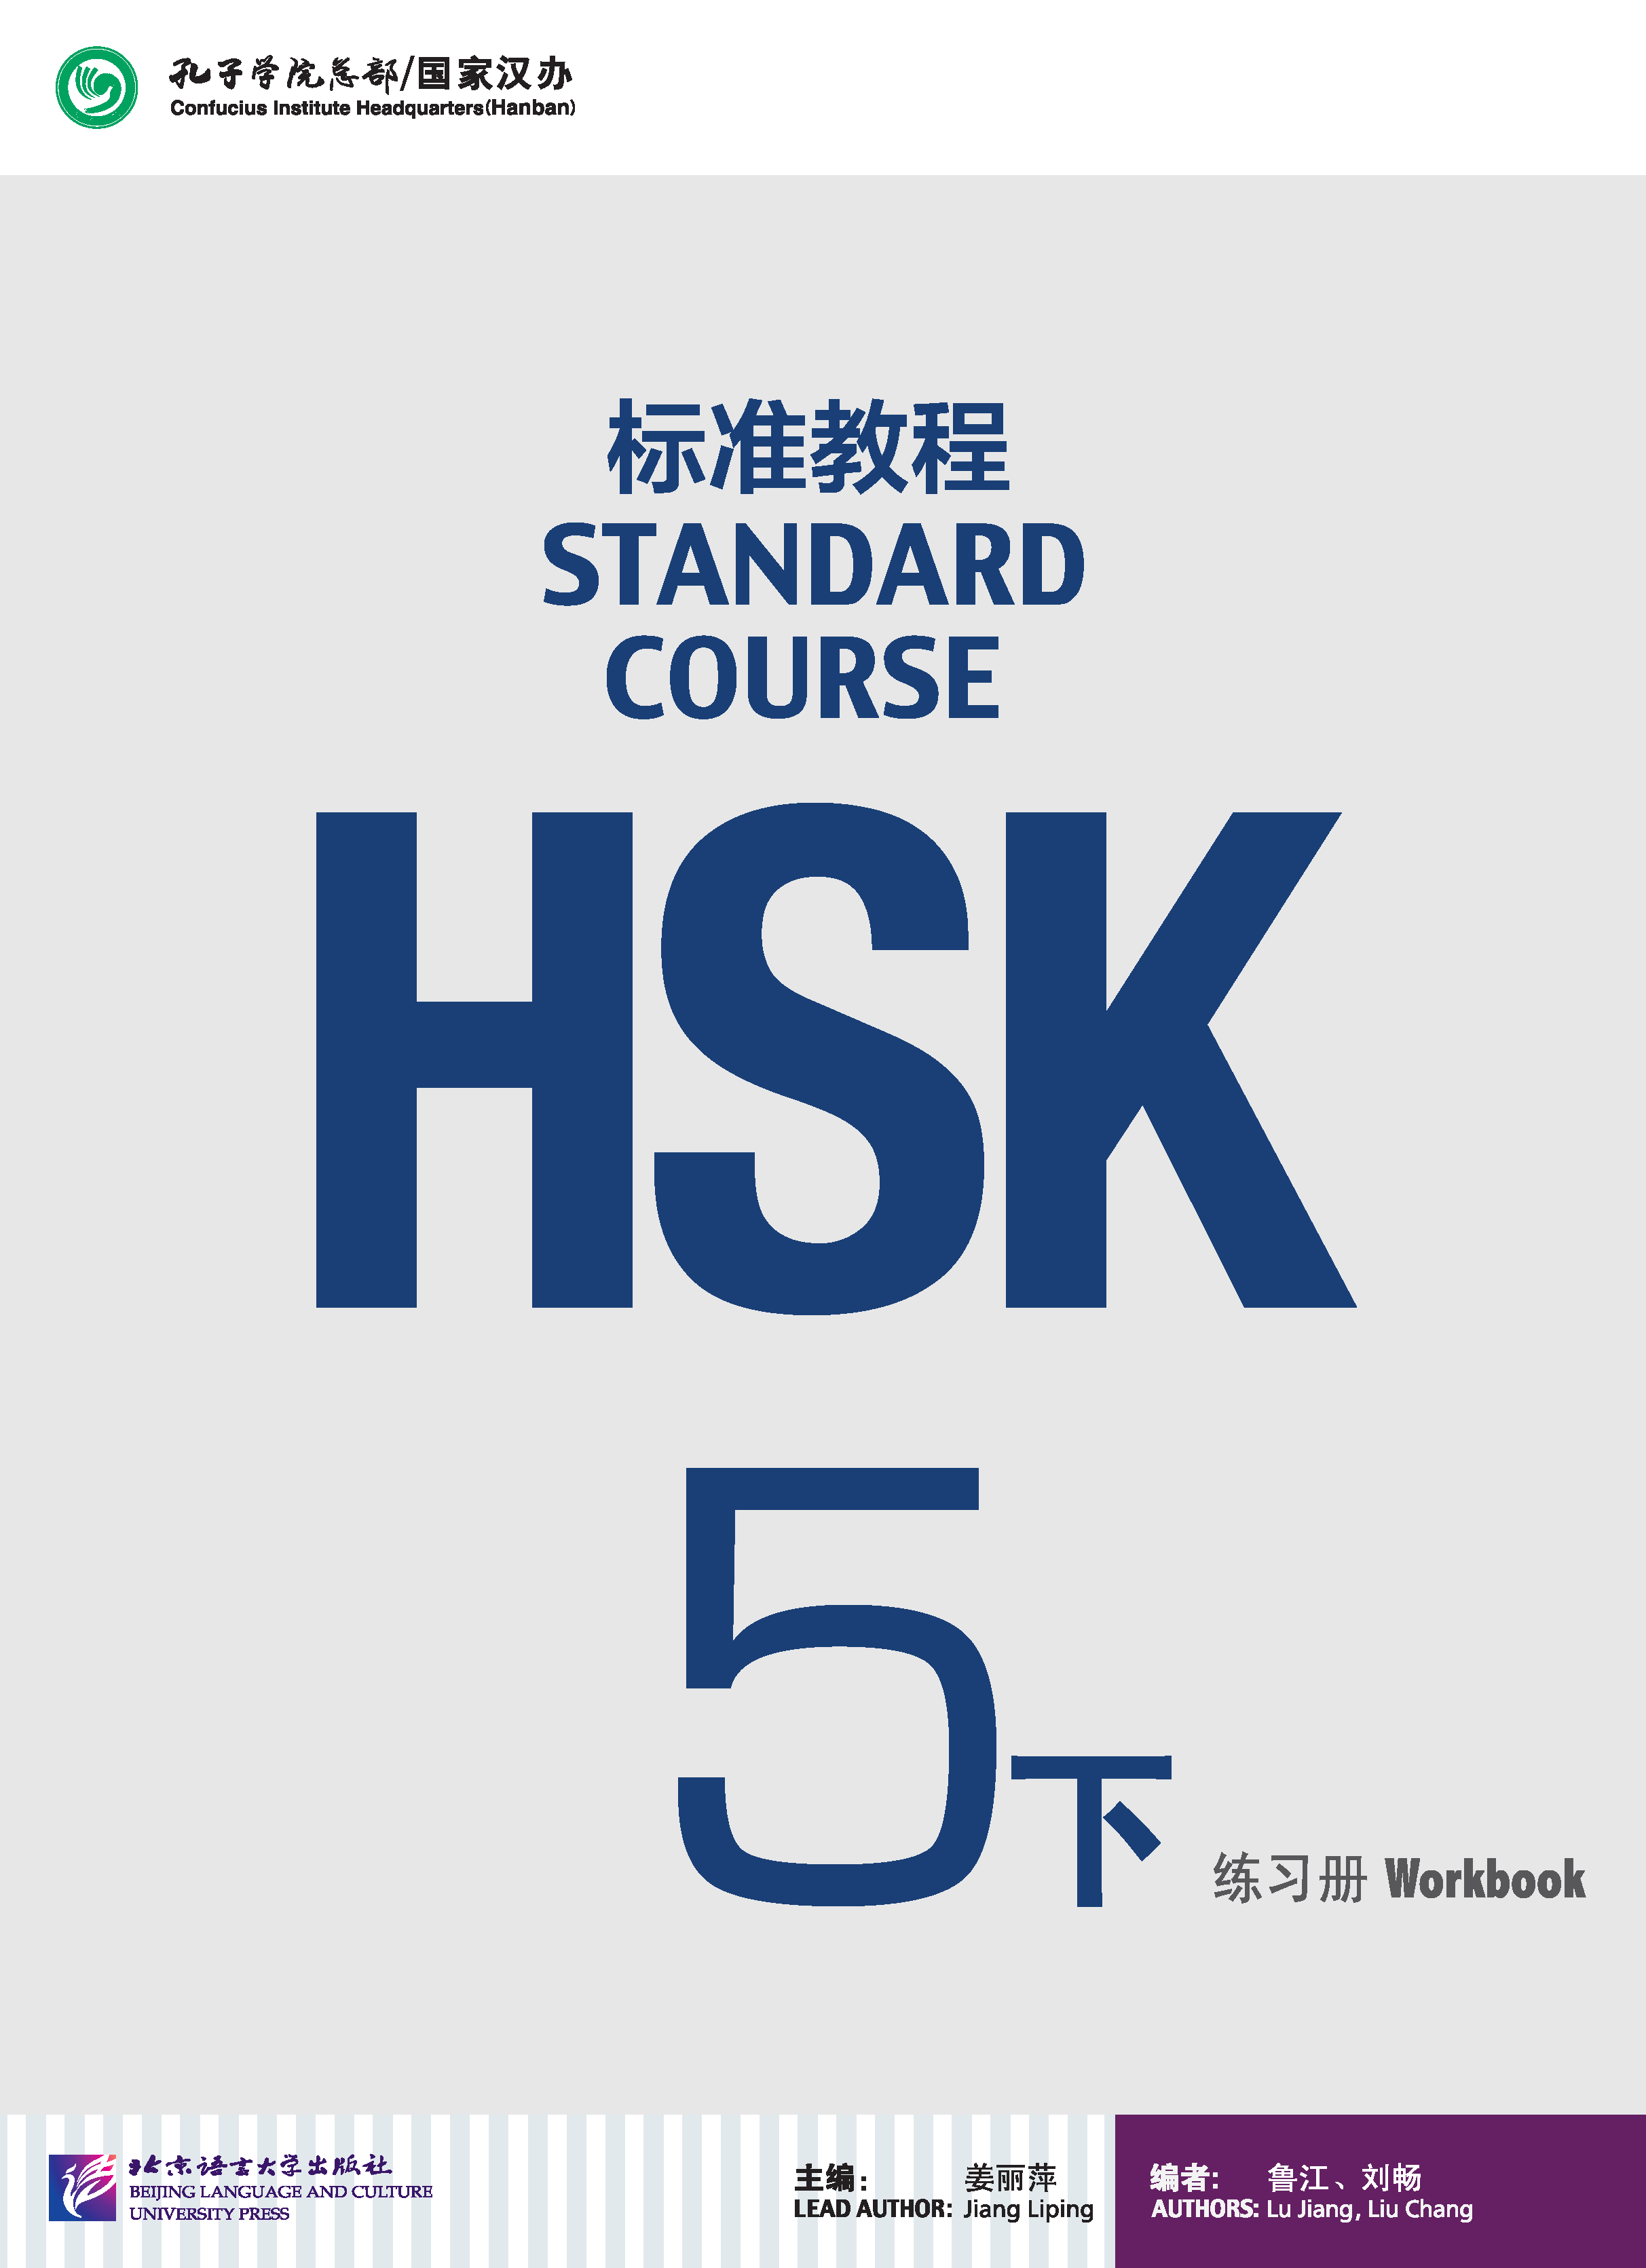 แบบฝึกหัด HSK / Stand Course HSK 5B Workbook / HSK 标准教程 5下 练习册